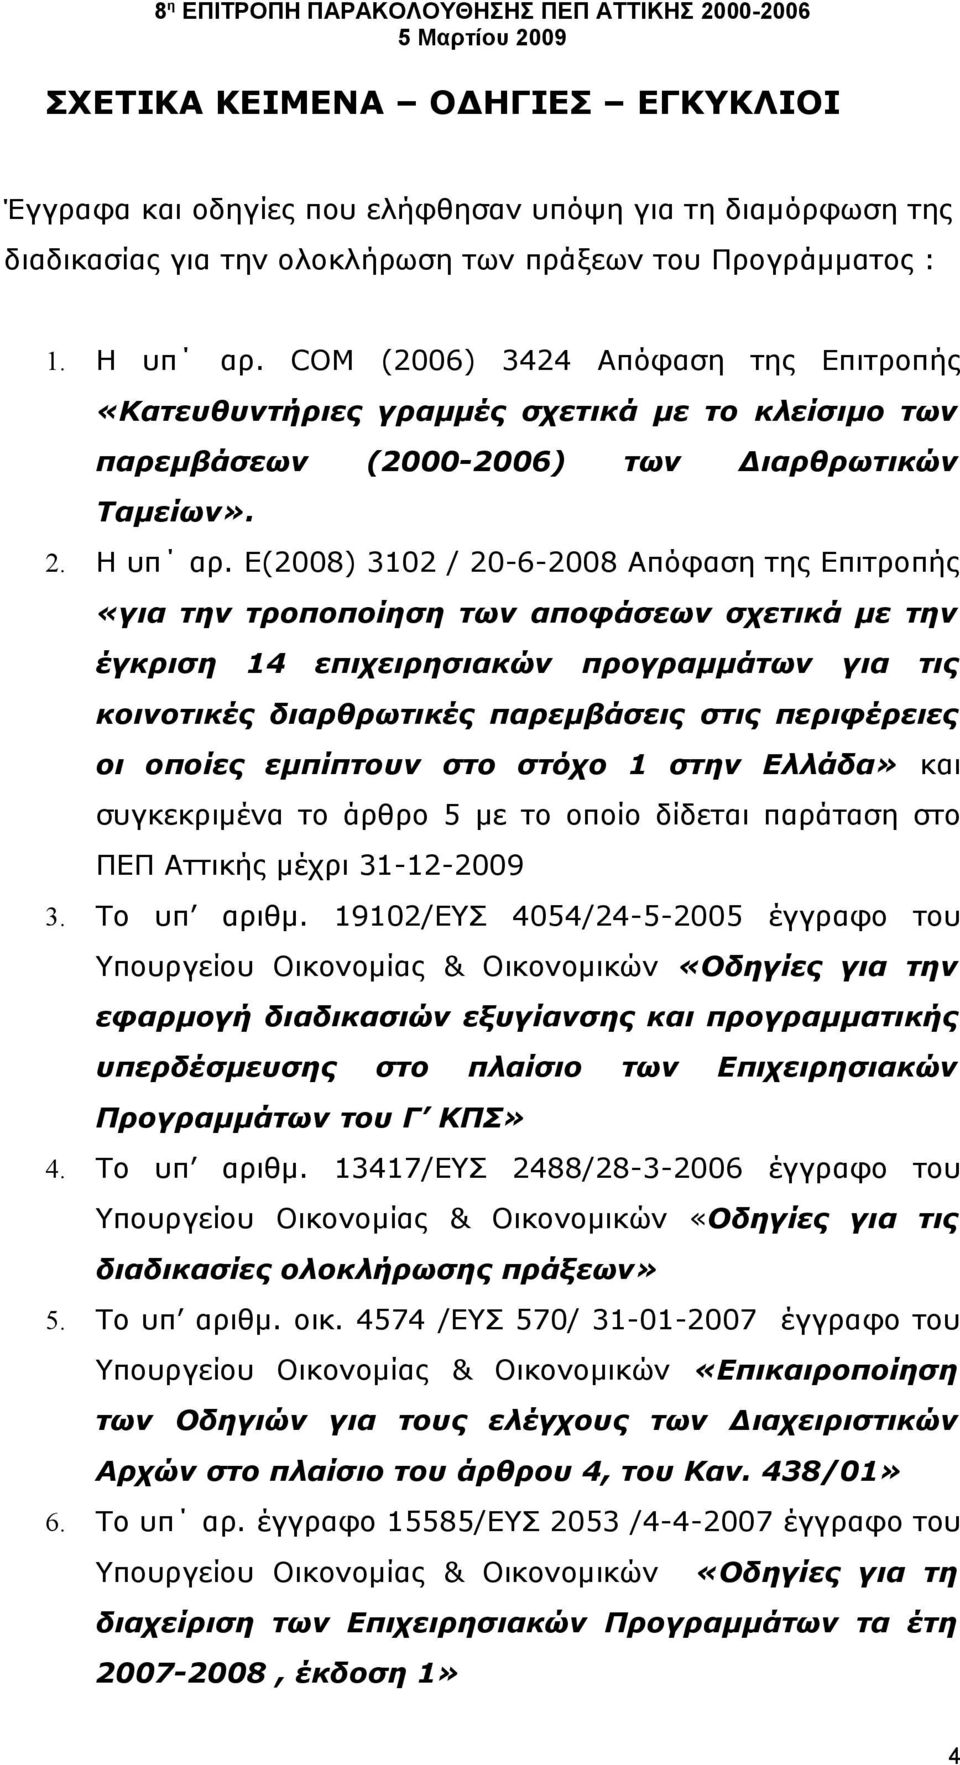 Ε(2008) 3102 / 20-6-2008 Απόφαση της Επιτροπής «για την τροποποίηση των αποφάσεων σχετικά με την έγκριση 14 επιχειρησιακών προγραμμάτων για τις κοινοτικές διαρθρωτικές παρεμβάσεις στις περιφέρειες οι